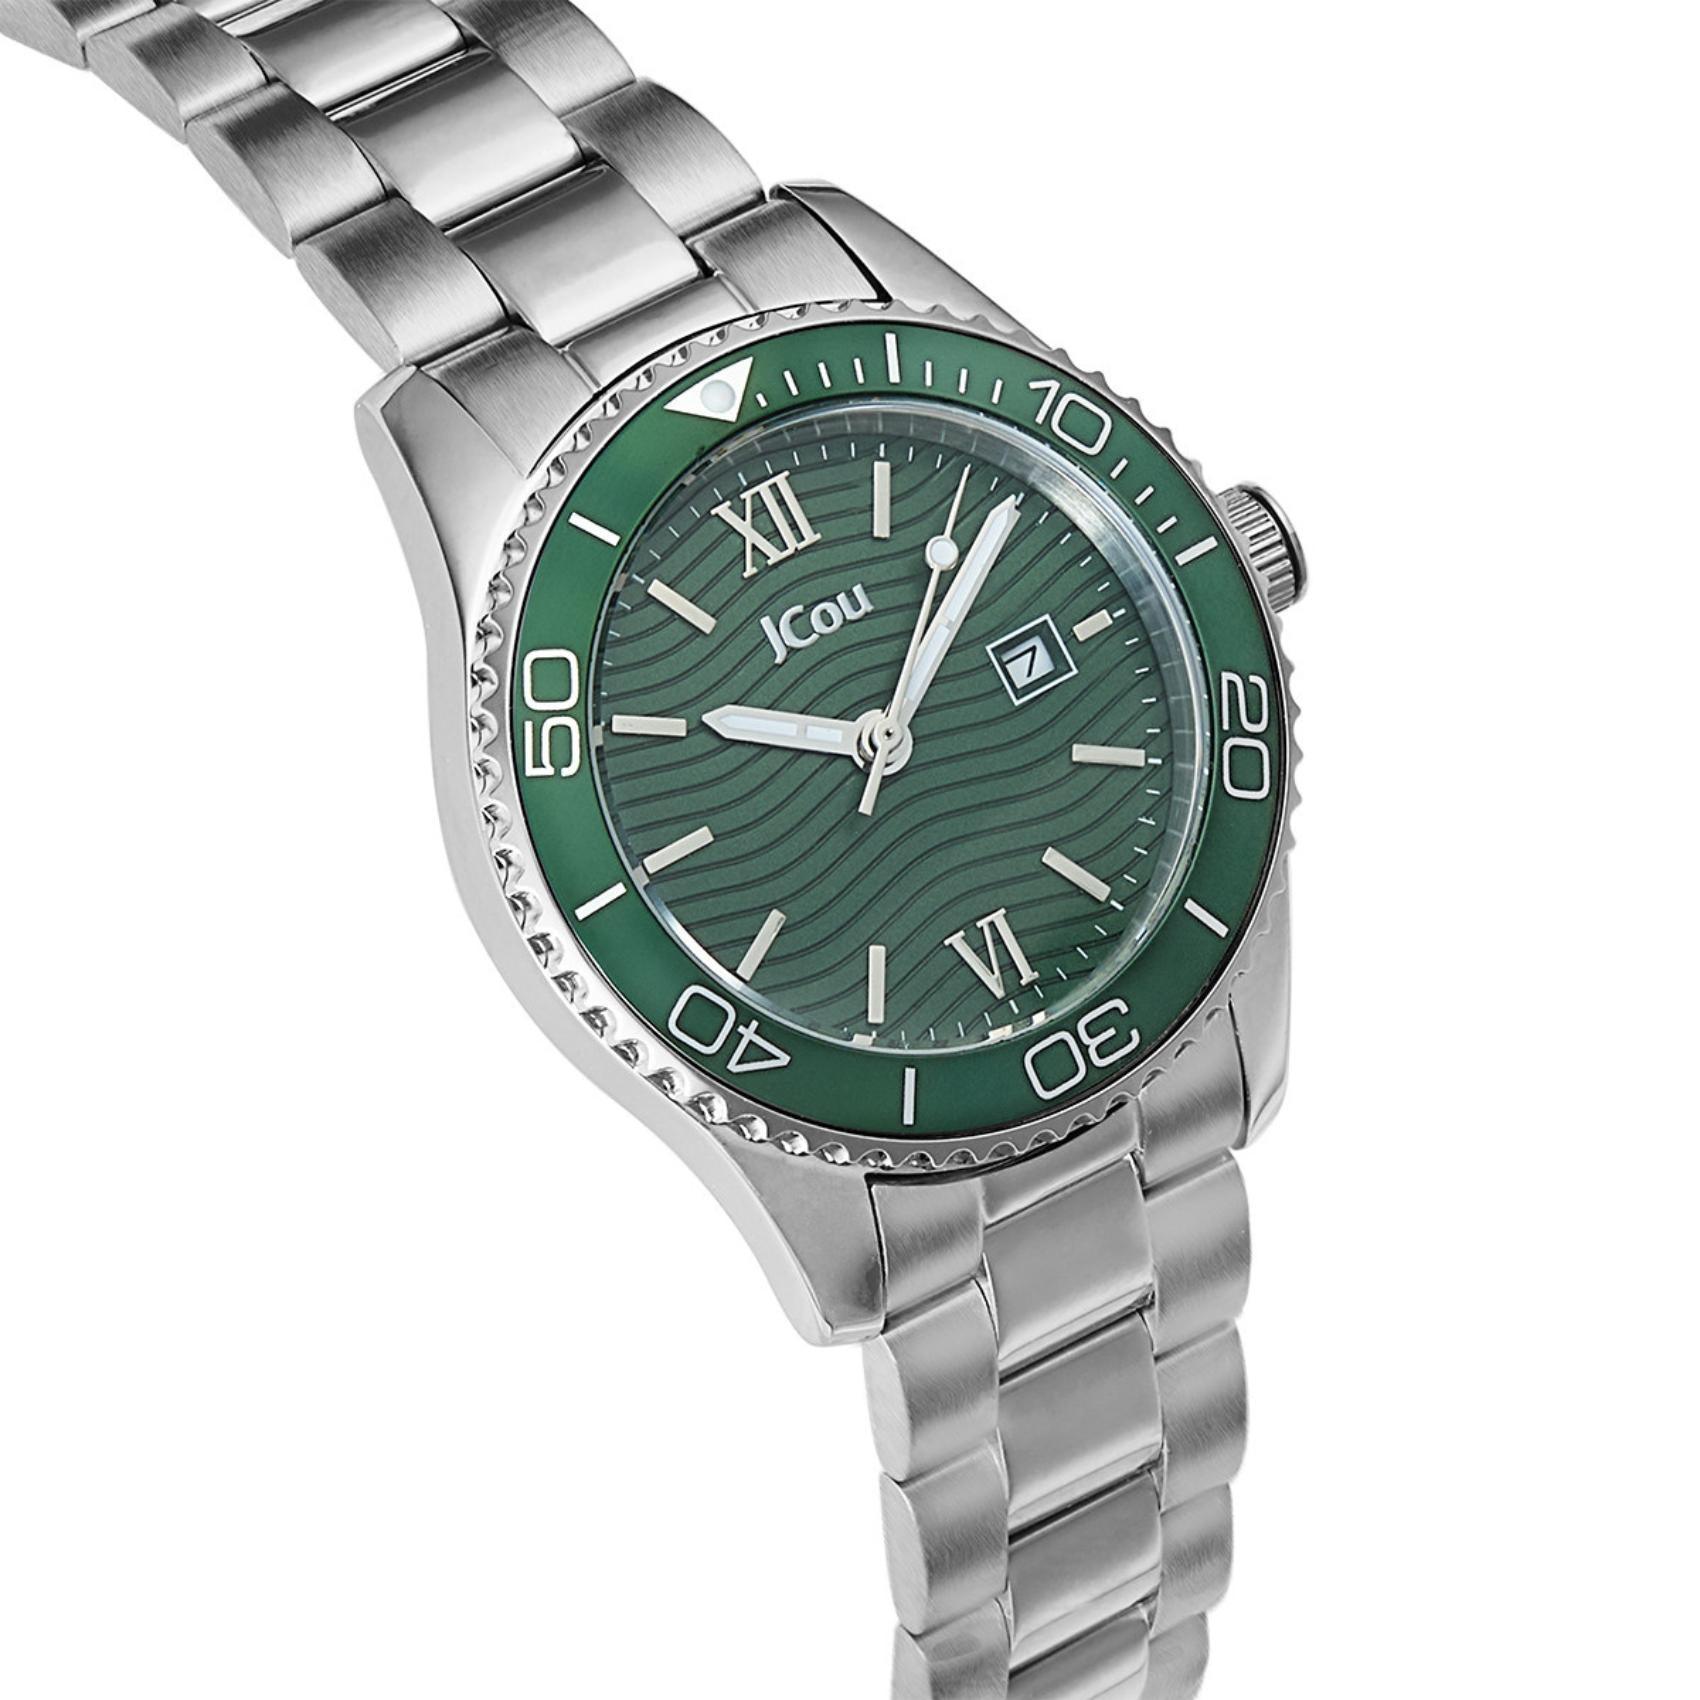 Γυναικέιο ρολόι JCOU Nerina JU19073-3 με ασημί ατσάλινο μπρασελέ και πράσινο καντράν διαμέτρου 32mm με ημερομηνία.